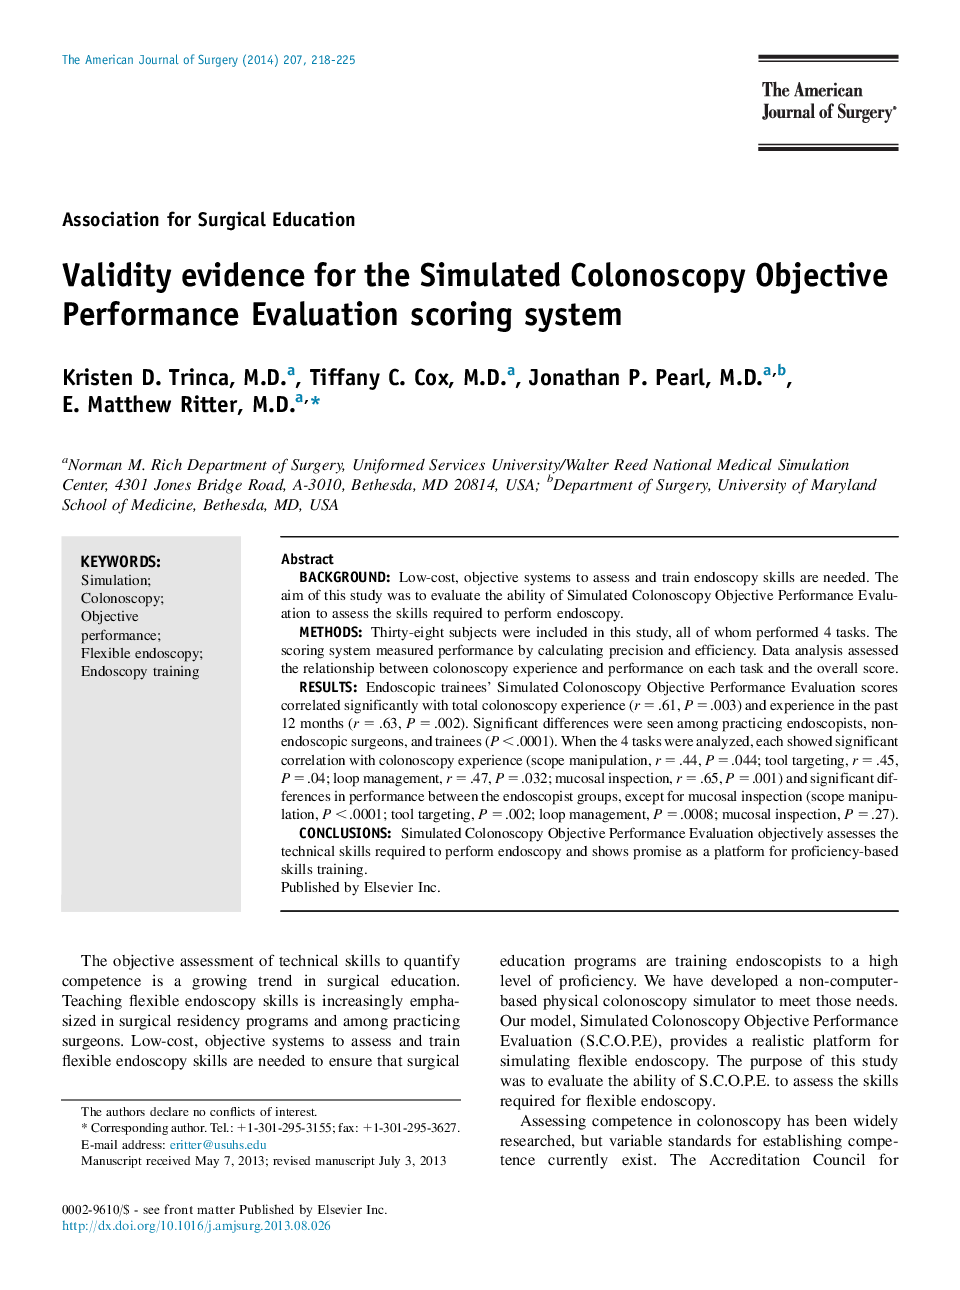 شواهد معتبر برای سیستم امتیازدهی عملکرد هدف شبیه سازی شده کولونوسکوپی 